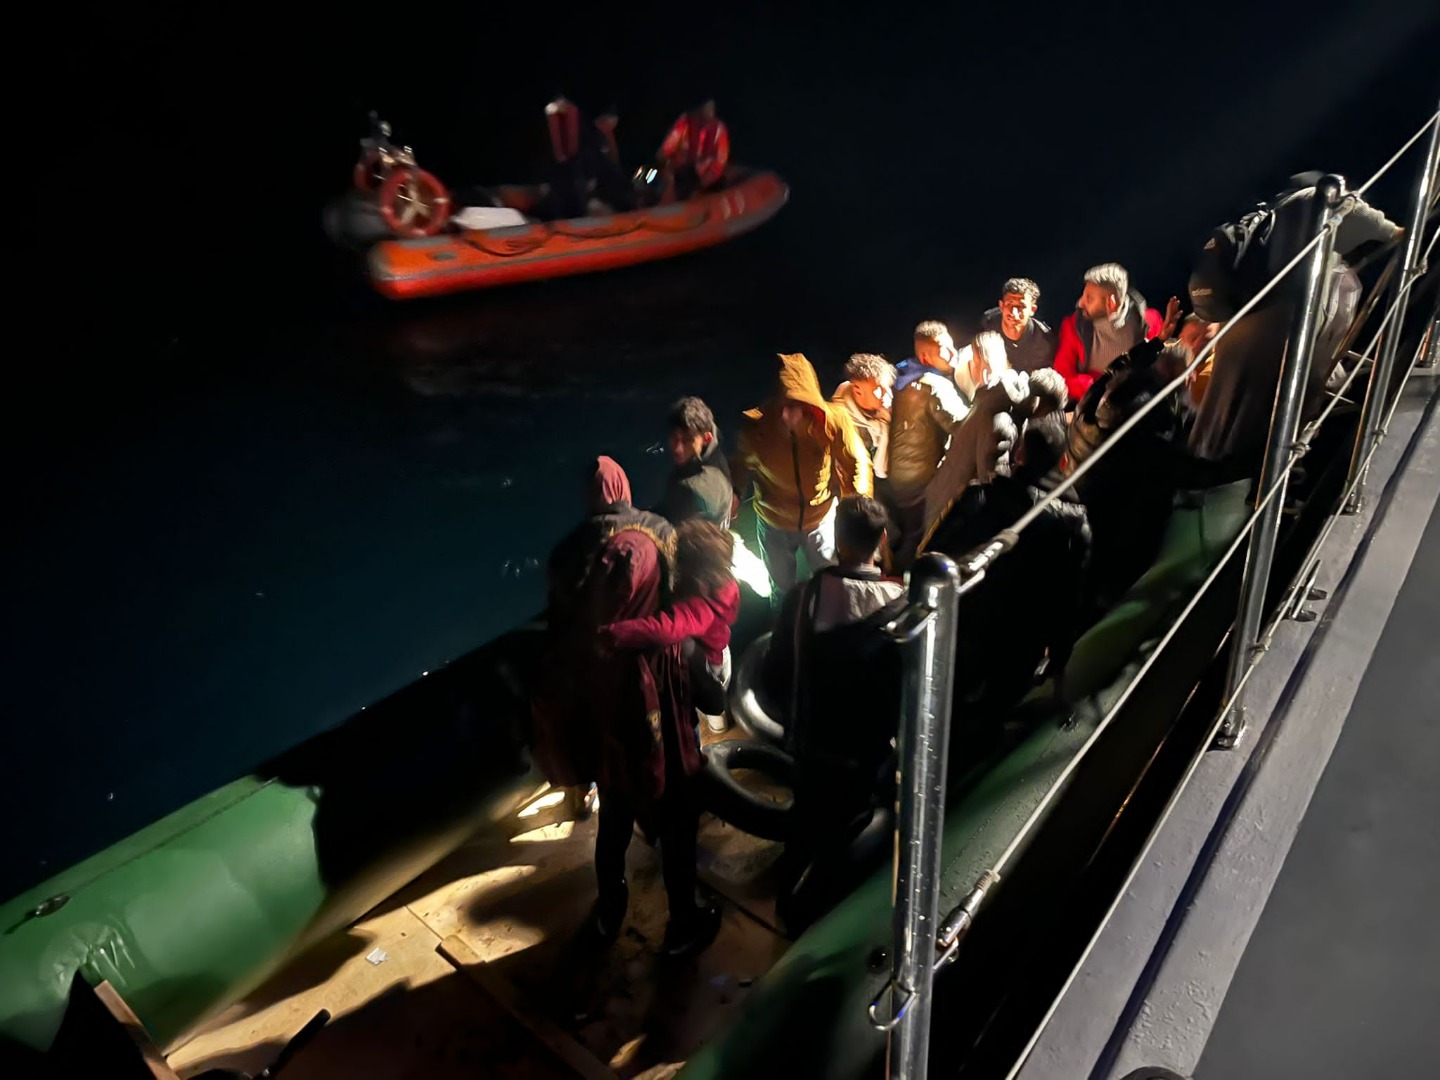 Bodrum açıklarında 57 düzensiz göçmen kurtarıldı, 31 düzensiz göçmen yakalandı